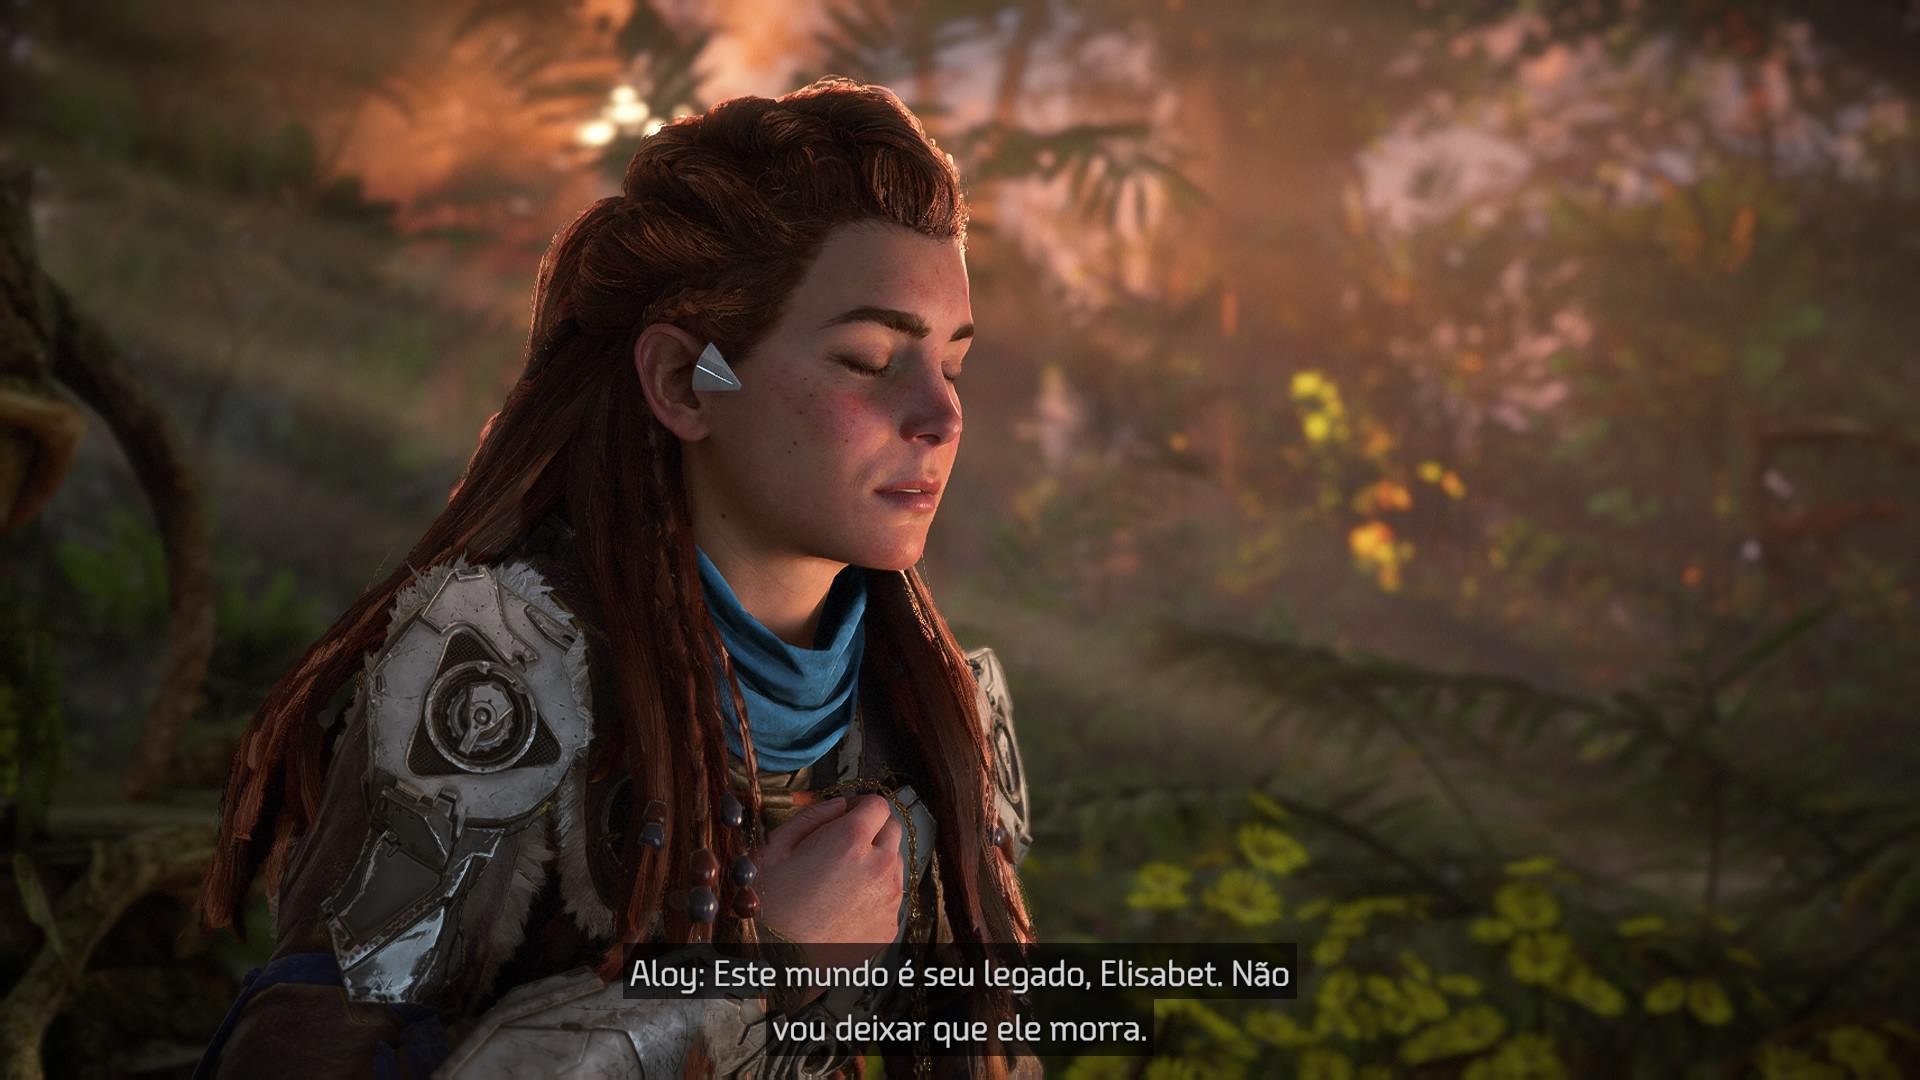 Descrição da imagem exemplo do tamanho das legendas, uma cena do jogo onde uma mulher ruiva olha para câmera encruando fala algo